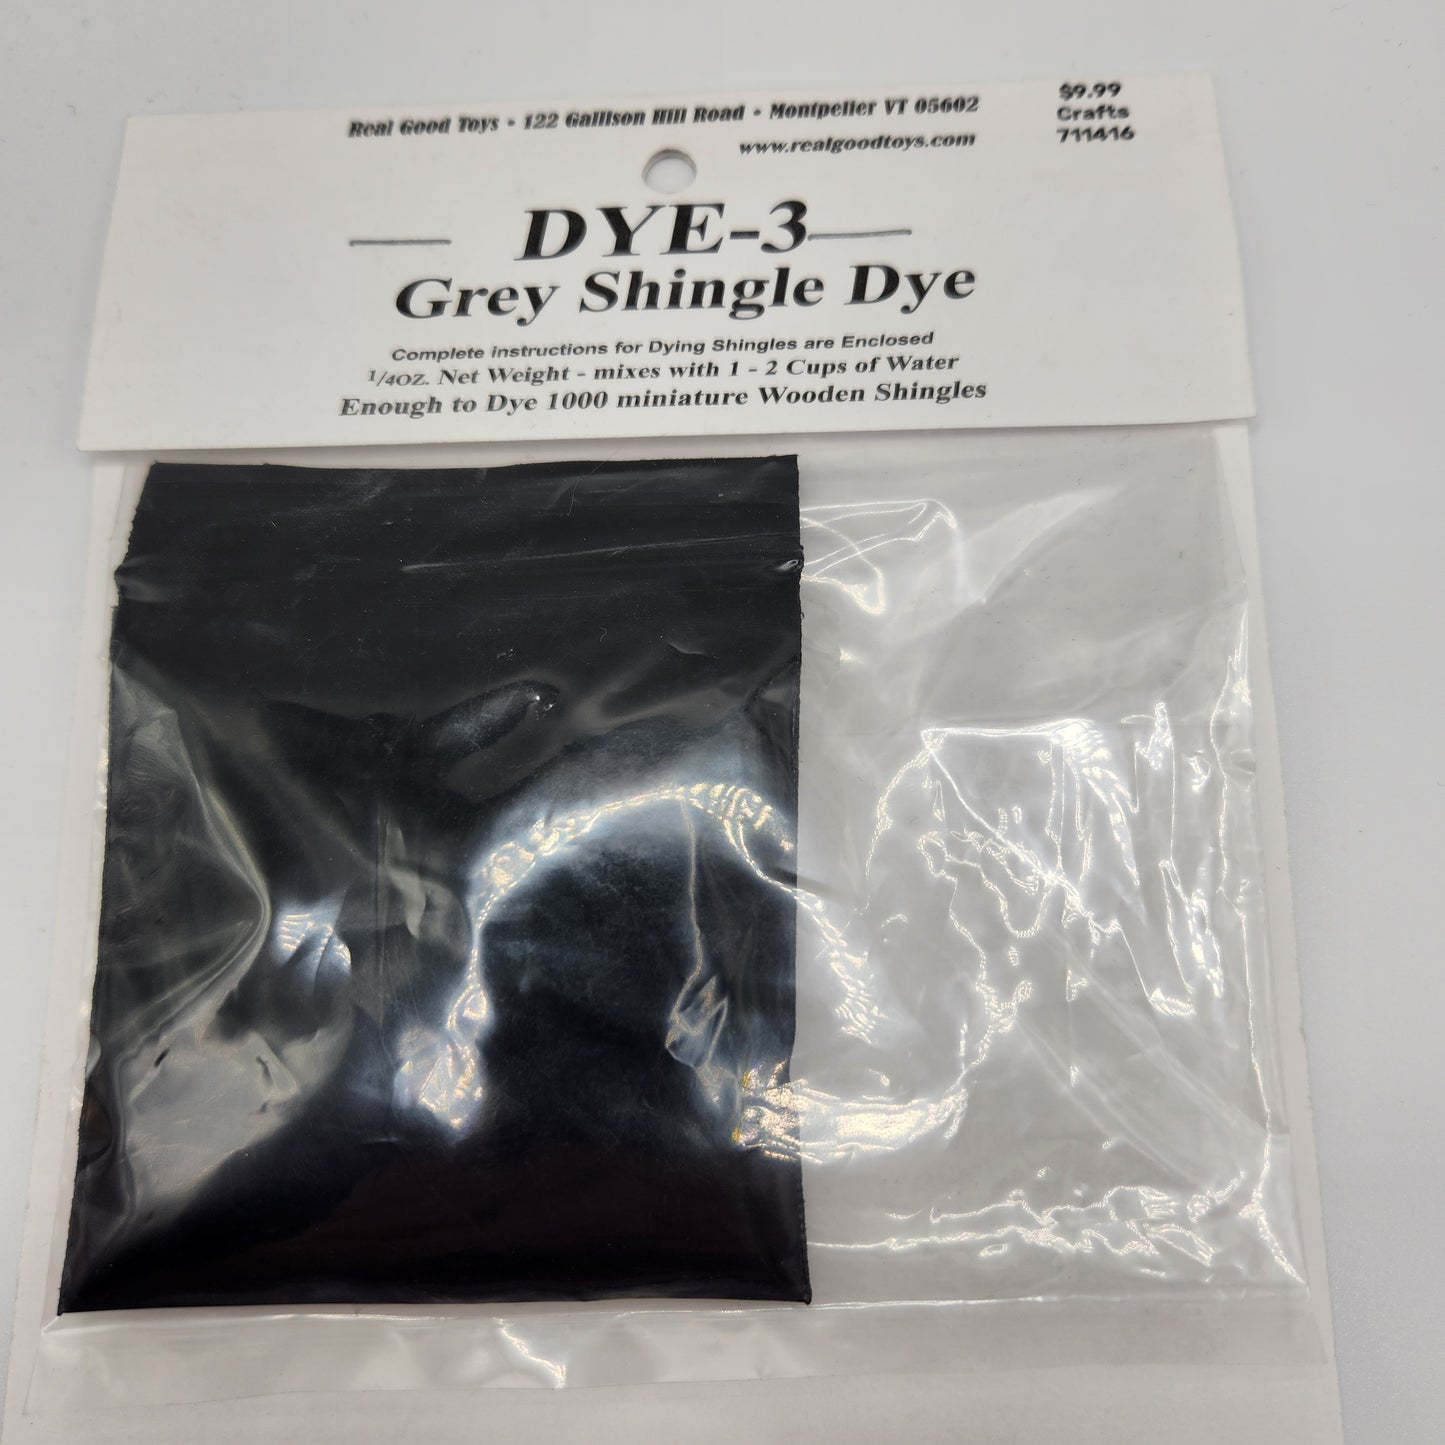 Shingle Dye - Grey